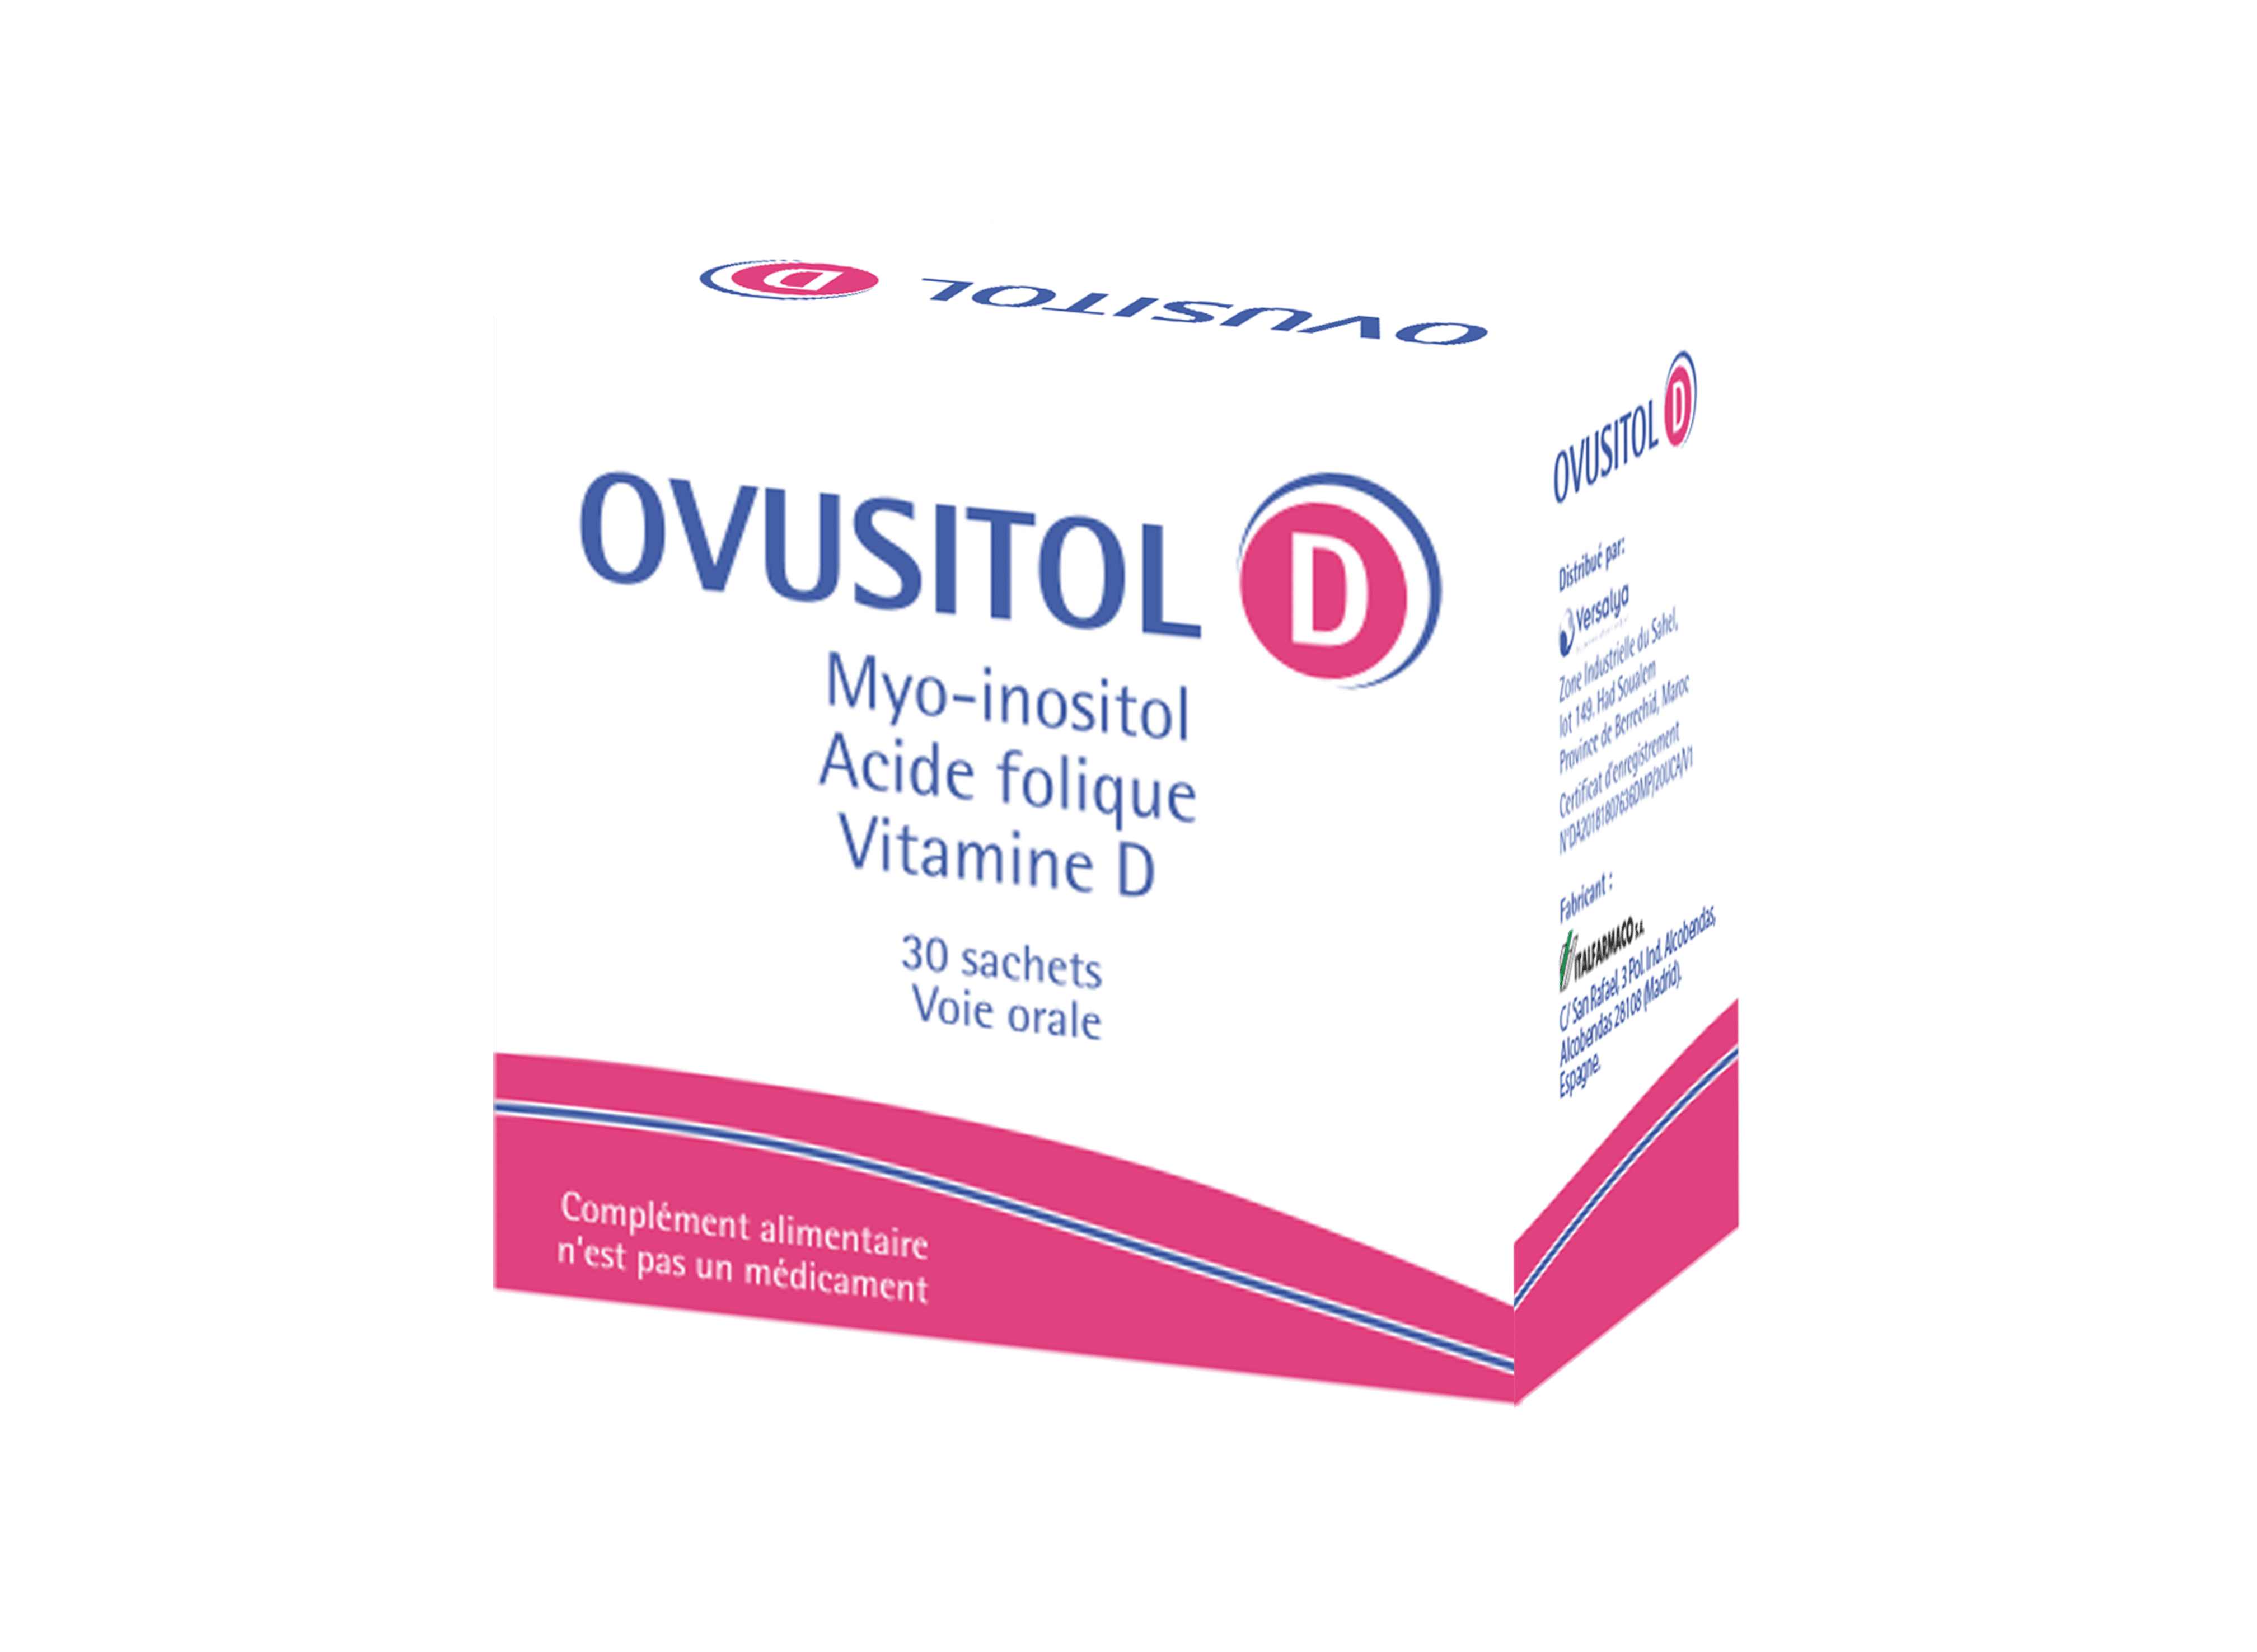 كيفية استخدام ovusitol